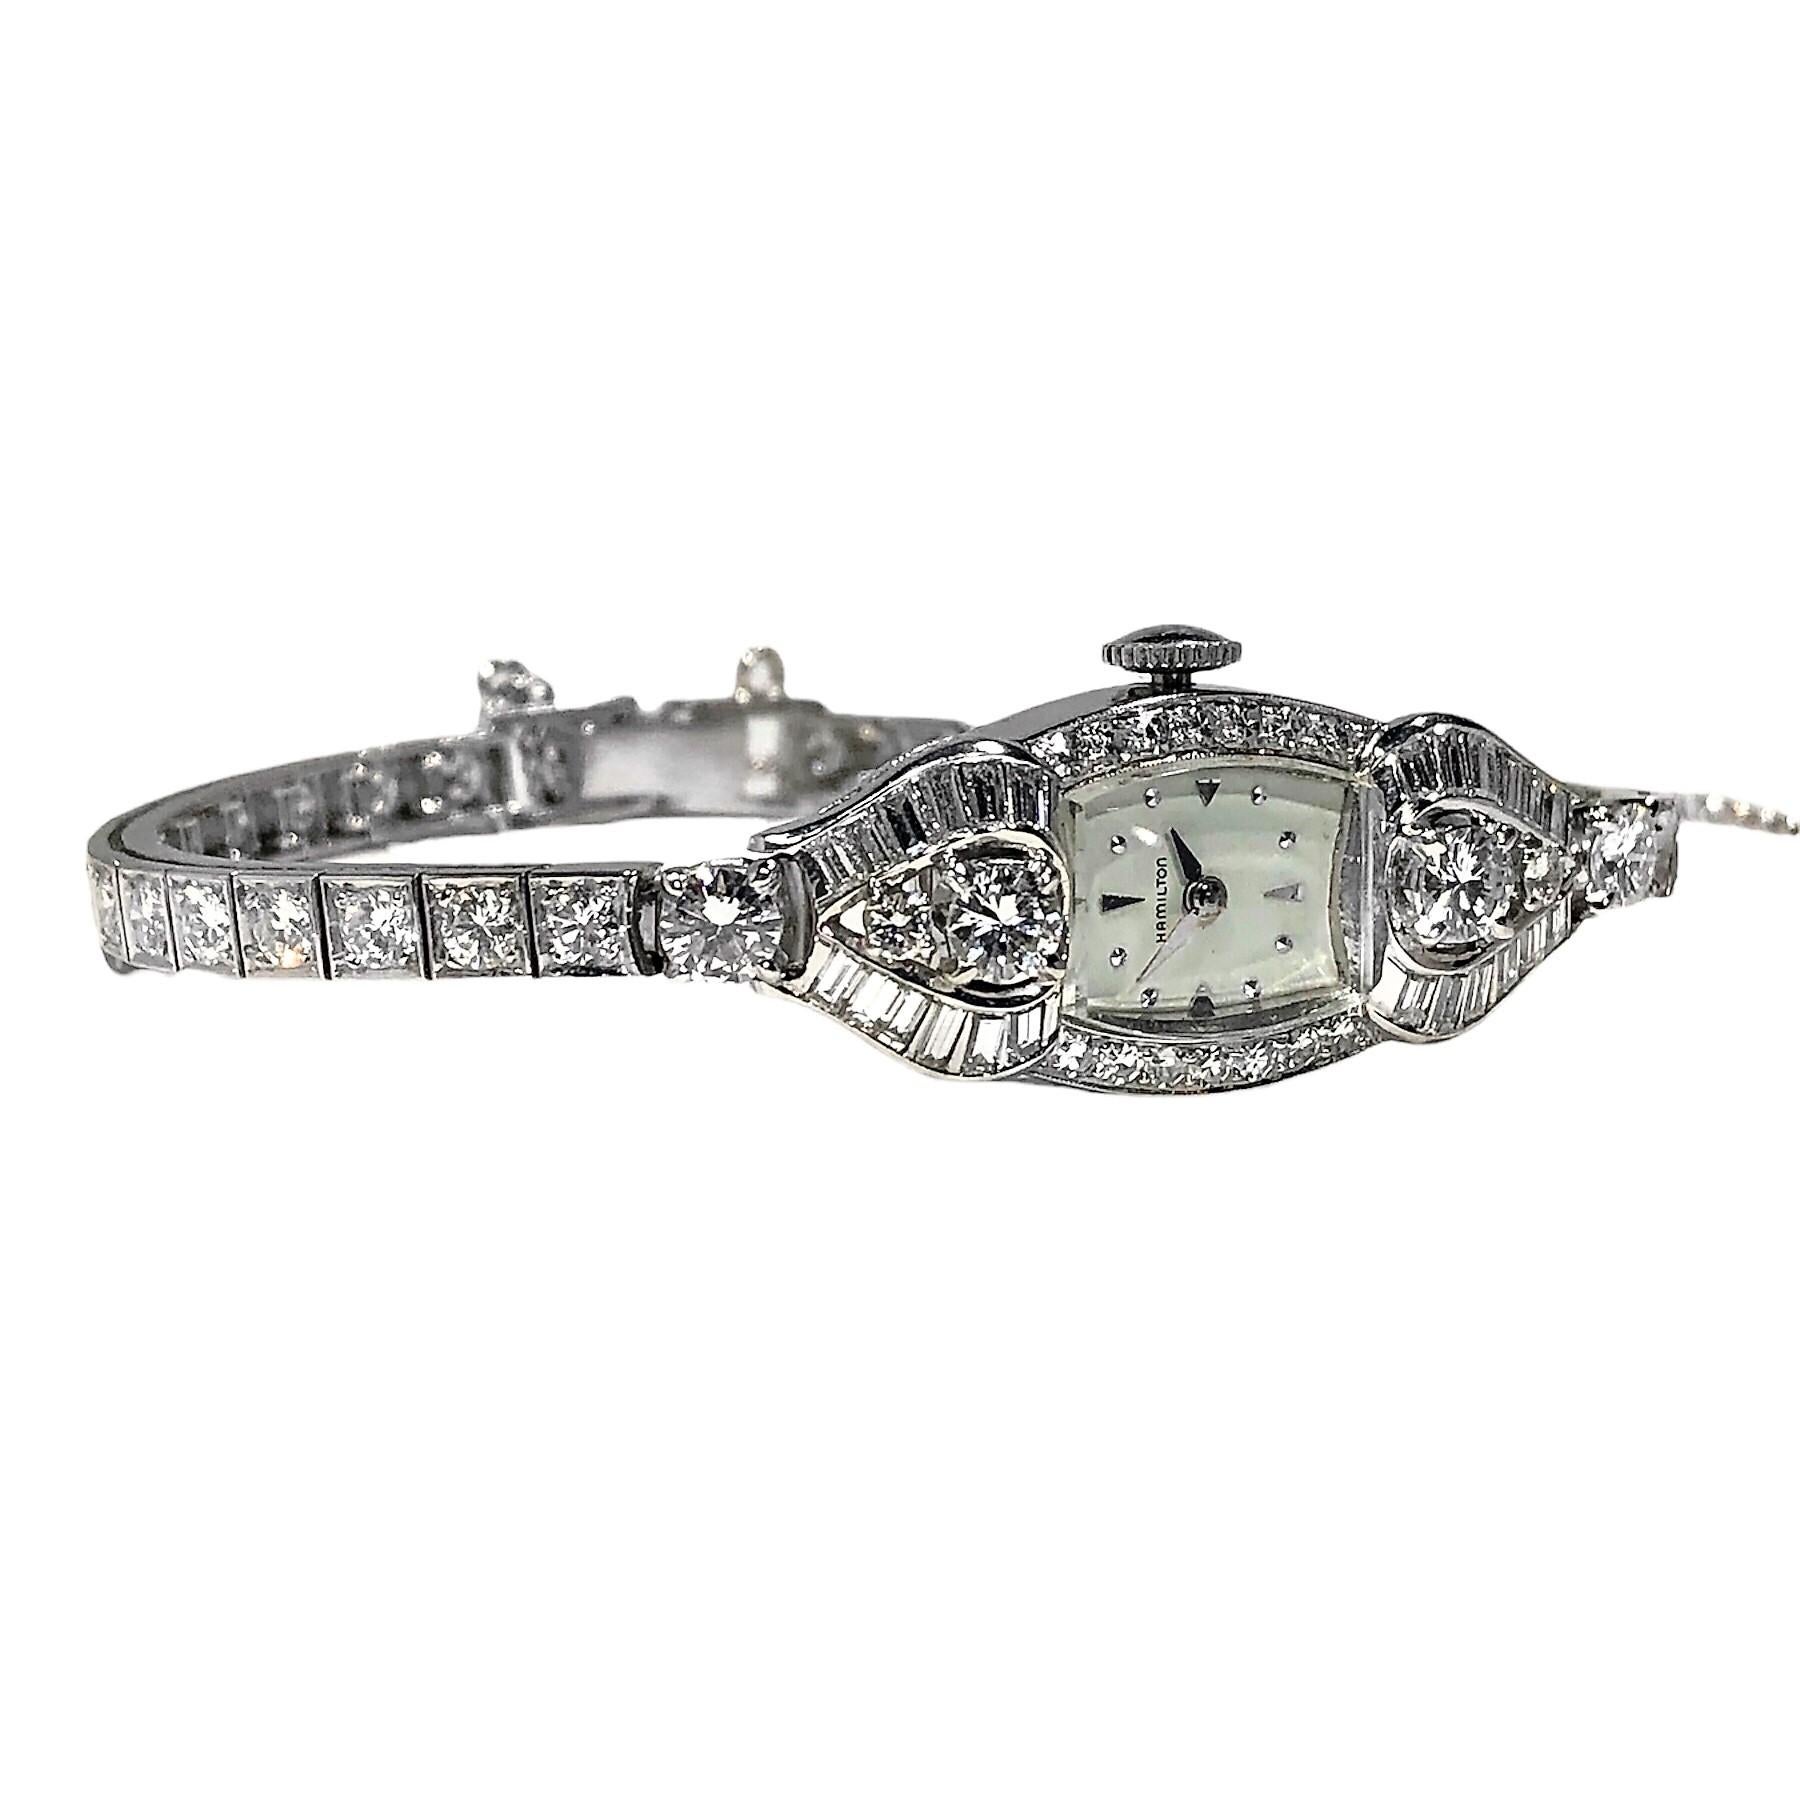 Brilliant Cut Elegant Platinum and Diamond Vintage, Ladies Hamilton Cocktail Watch